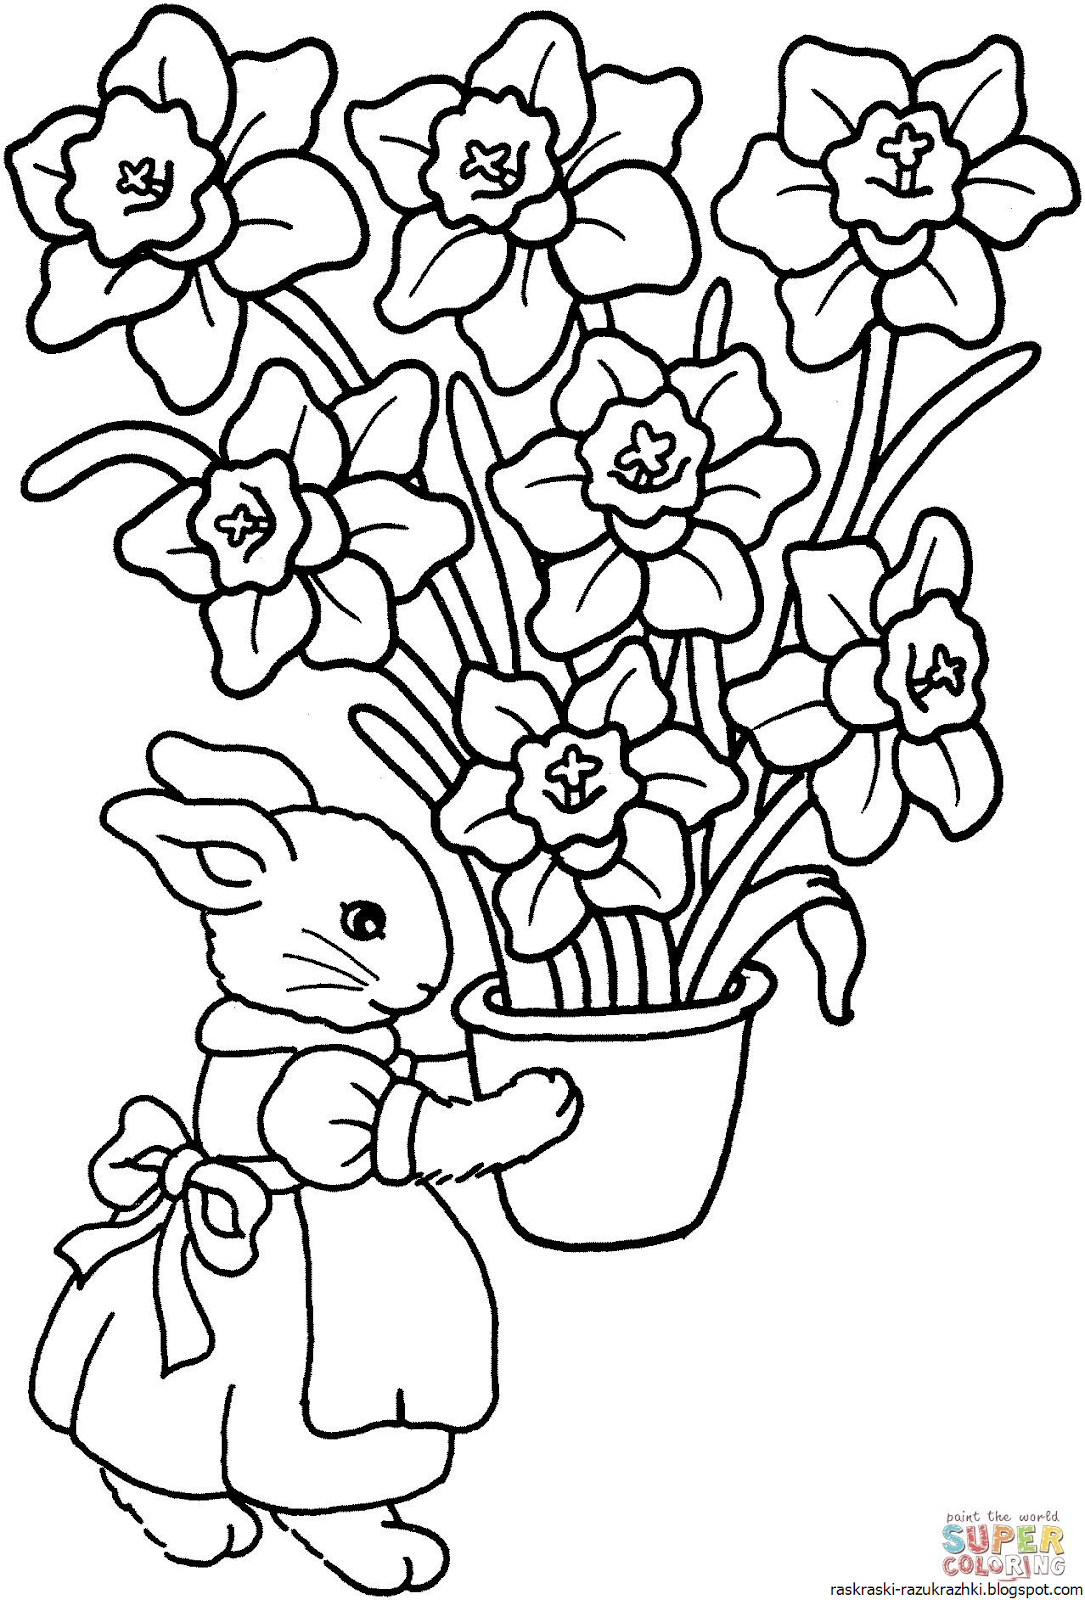 Раскраски с изображением ваз и ваз с цветами для детей 4-10 лет Красивые вазы с узорами для раскрашивания и рисования